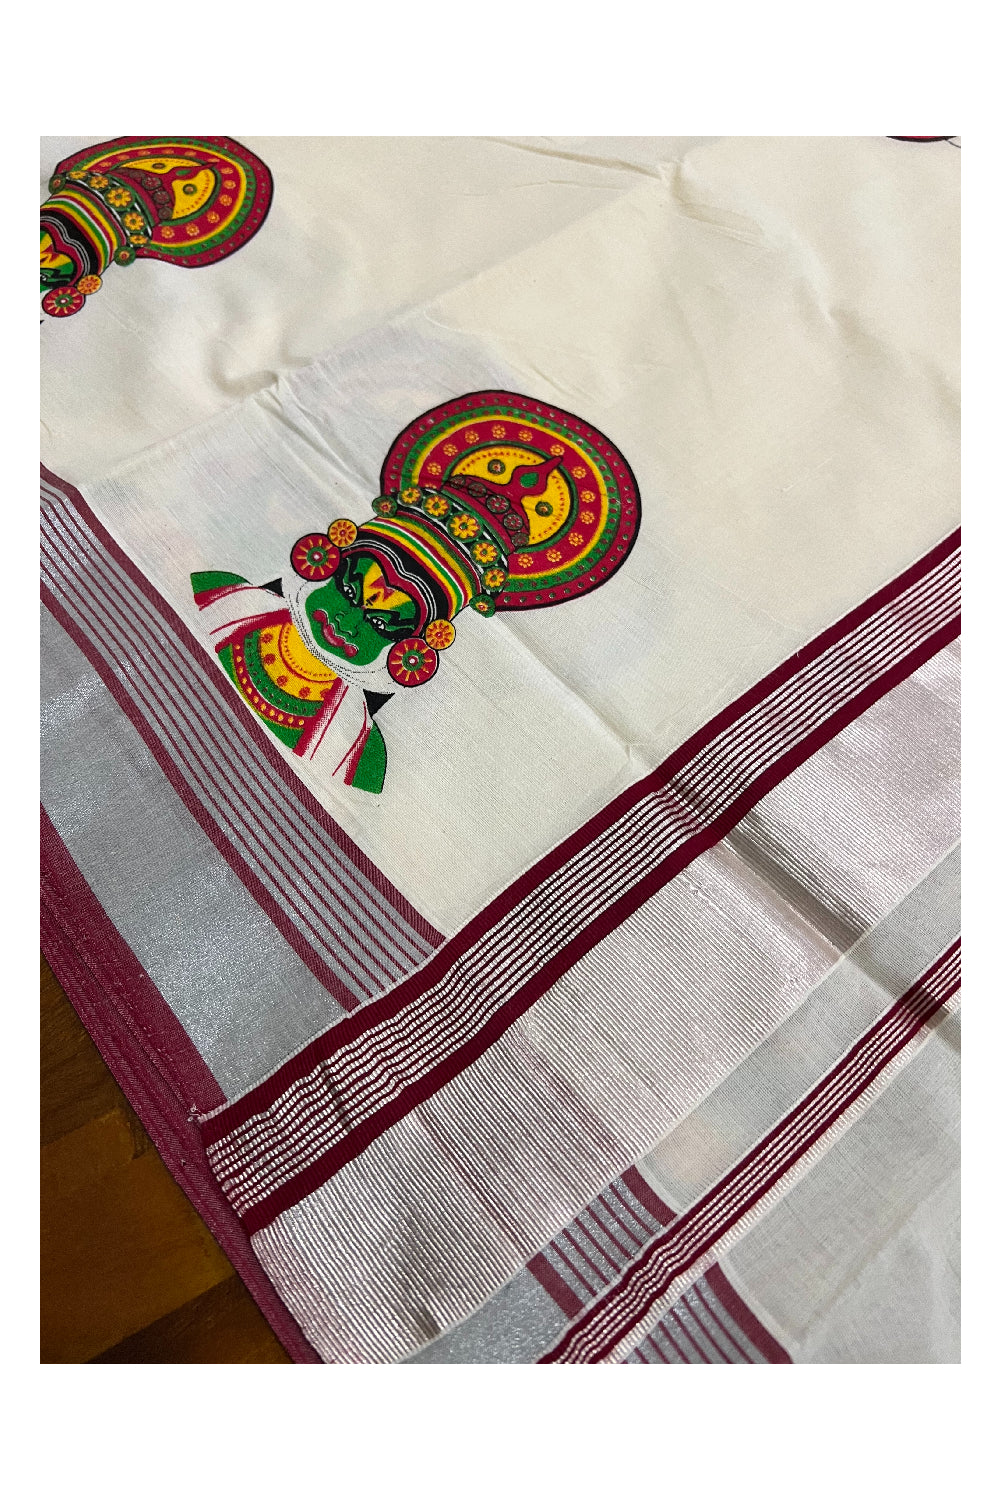 Kerala Pure Cotton Silver Kasavu Saree with Kathakali Face Printed and Maroon Border